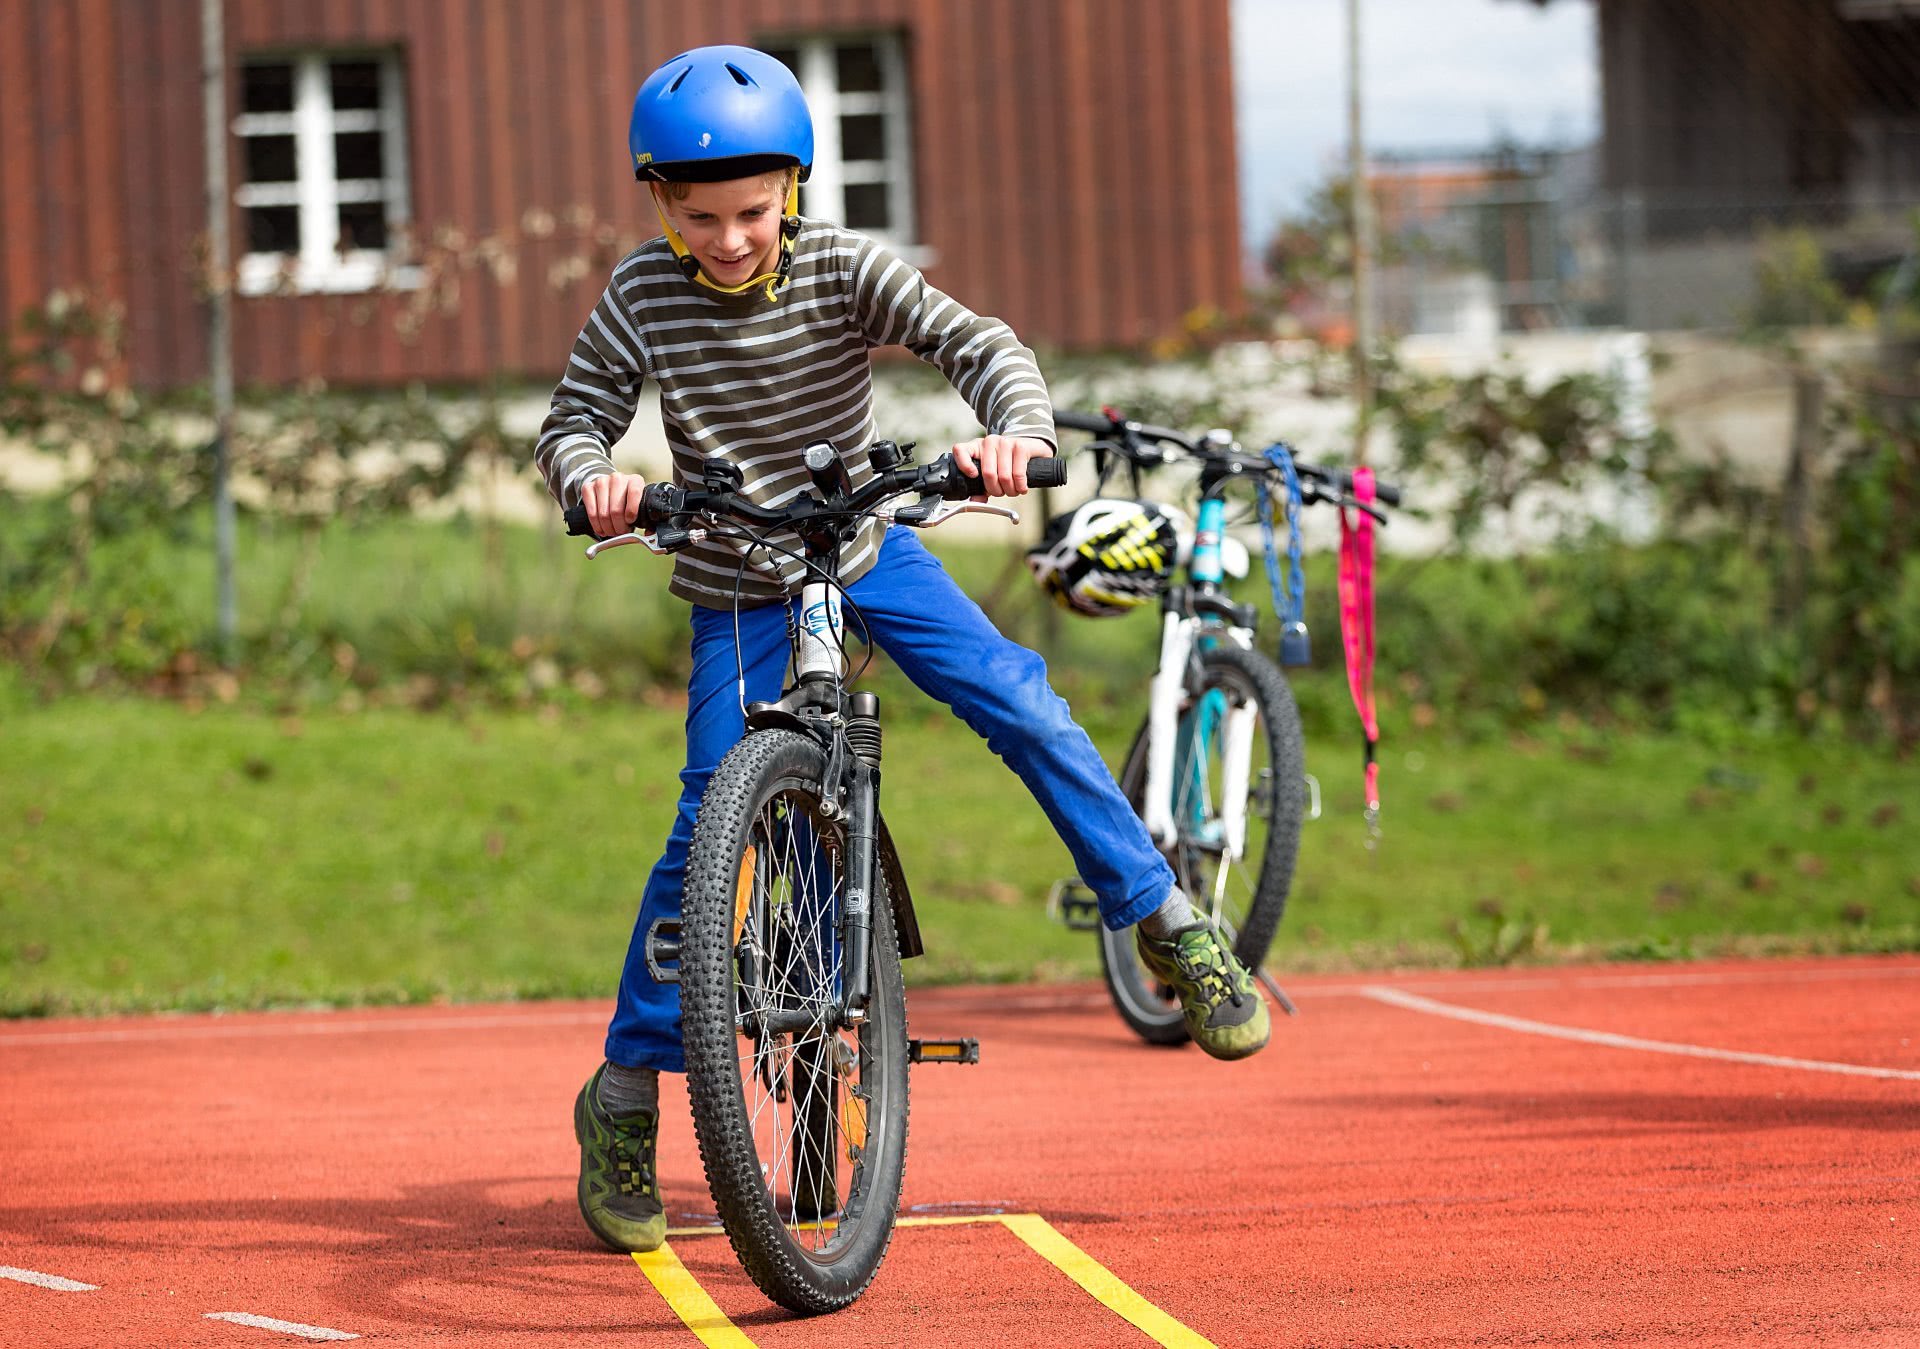 Bild: Ein Kind beim Balancieren auf dem Fahrrad.